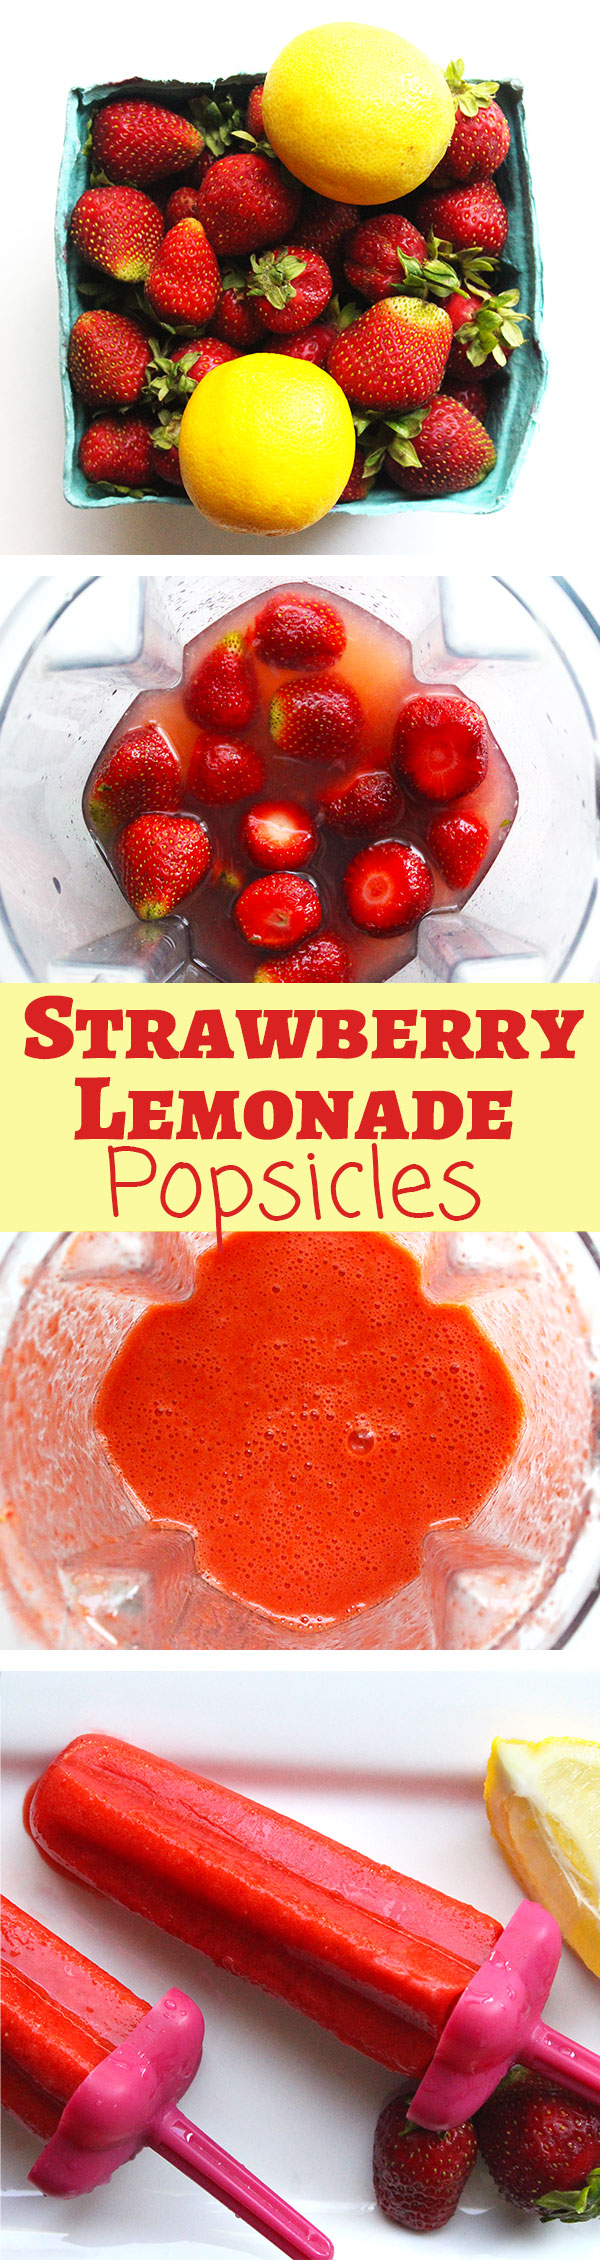 Homemade Strawberry Lemonade Popsicles